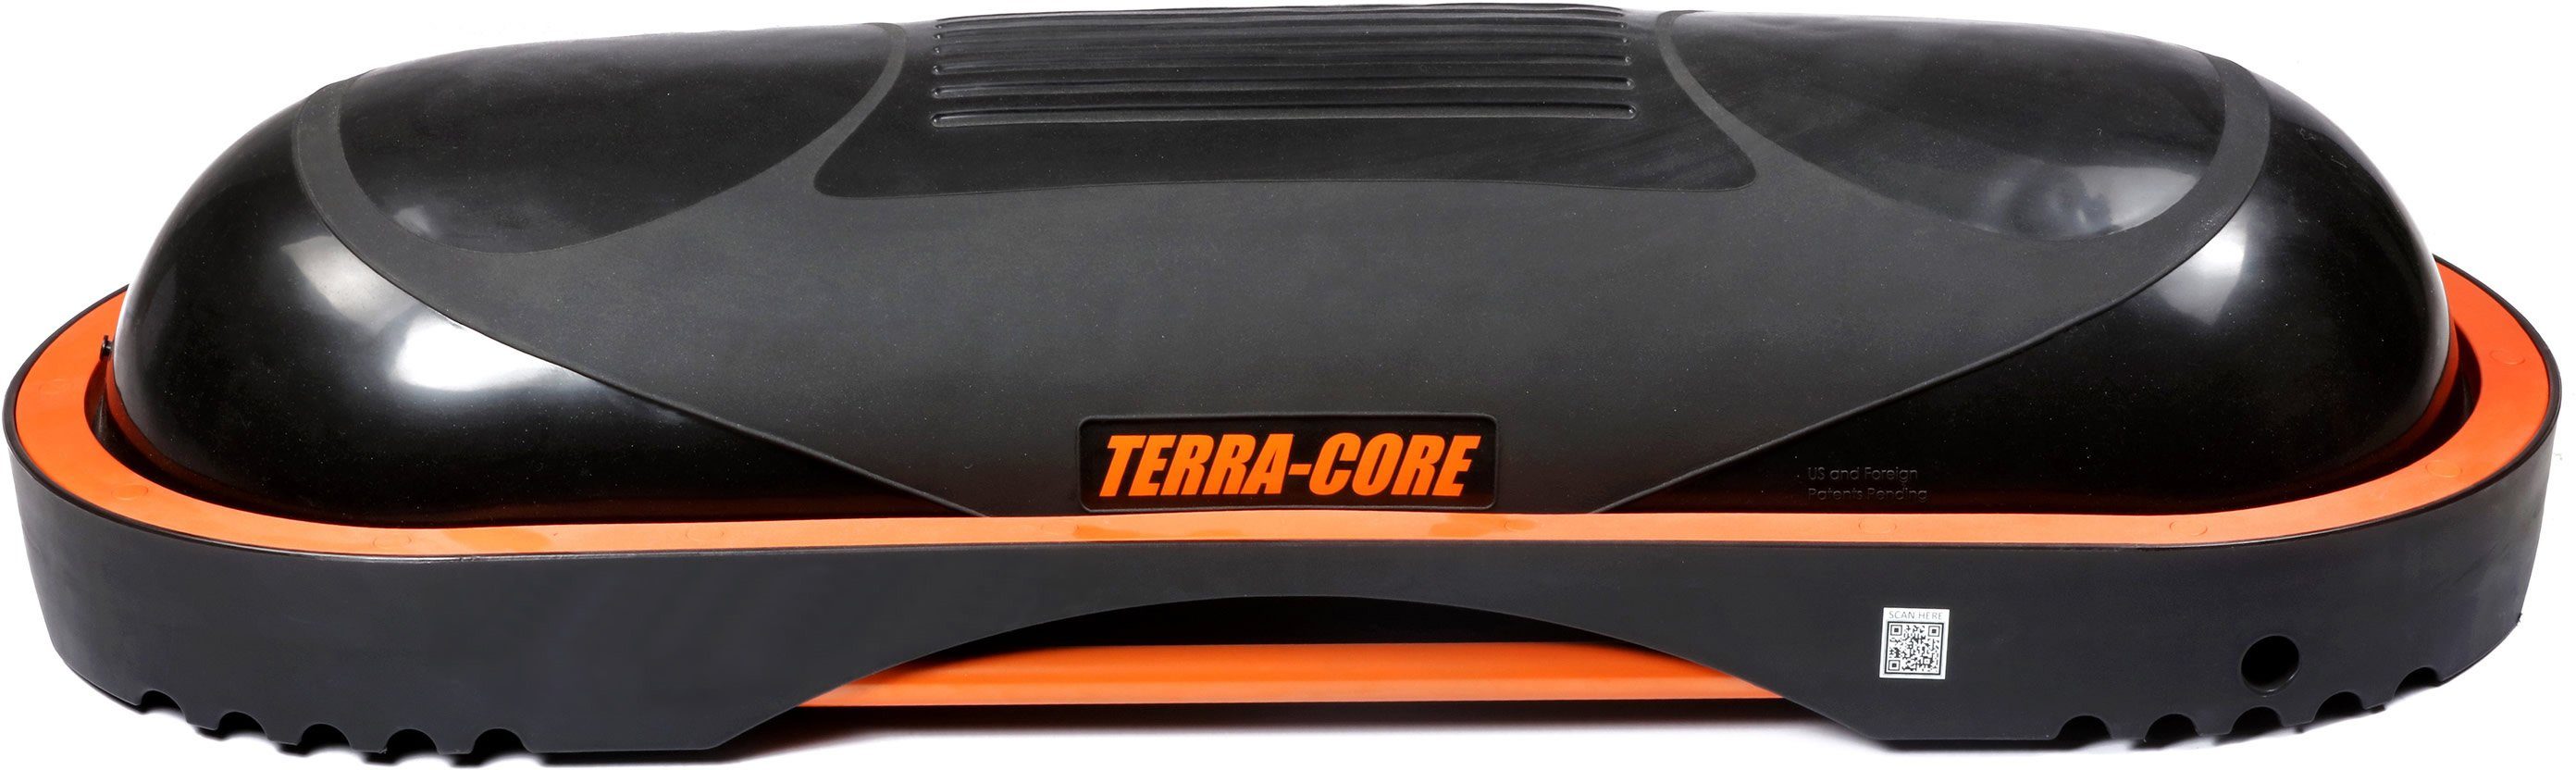 [Super günstig ☆ Auf 8 Tage begrenzt] Terra Core Terra Balancetrainer Universelle Workout Bench, Board und Balance Core, Stepp